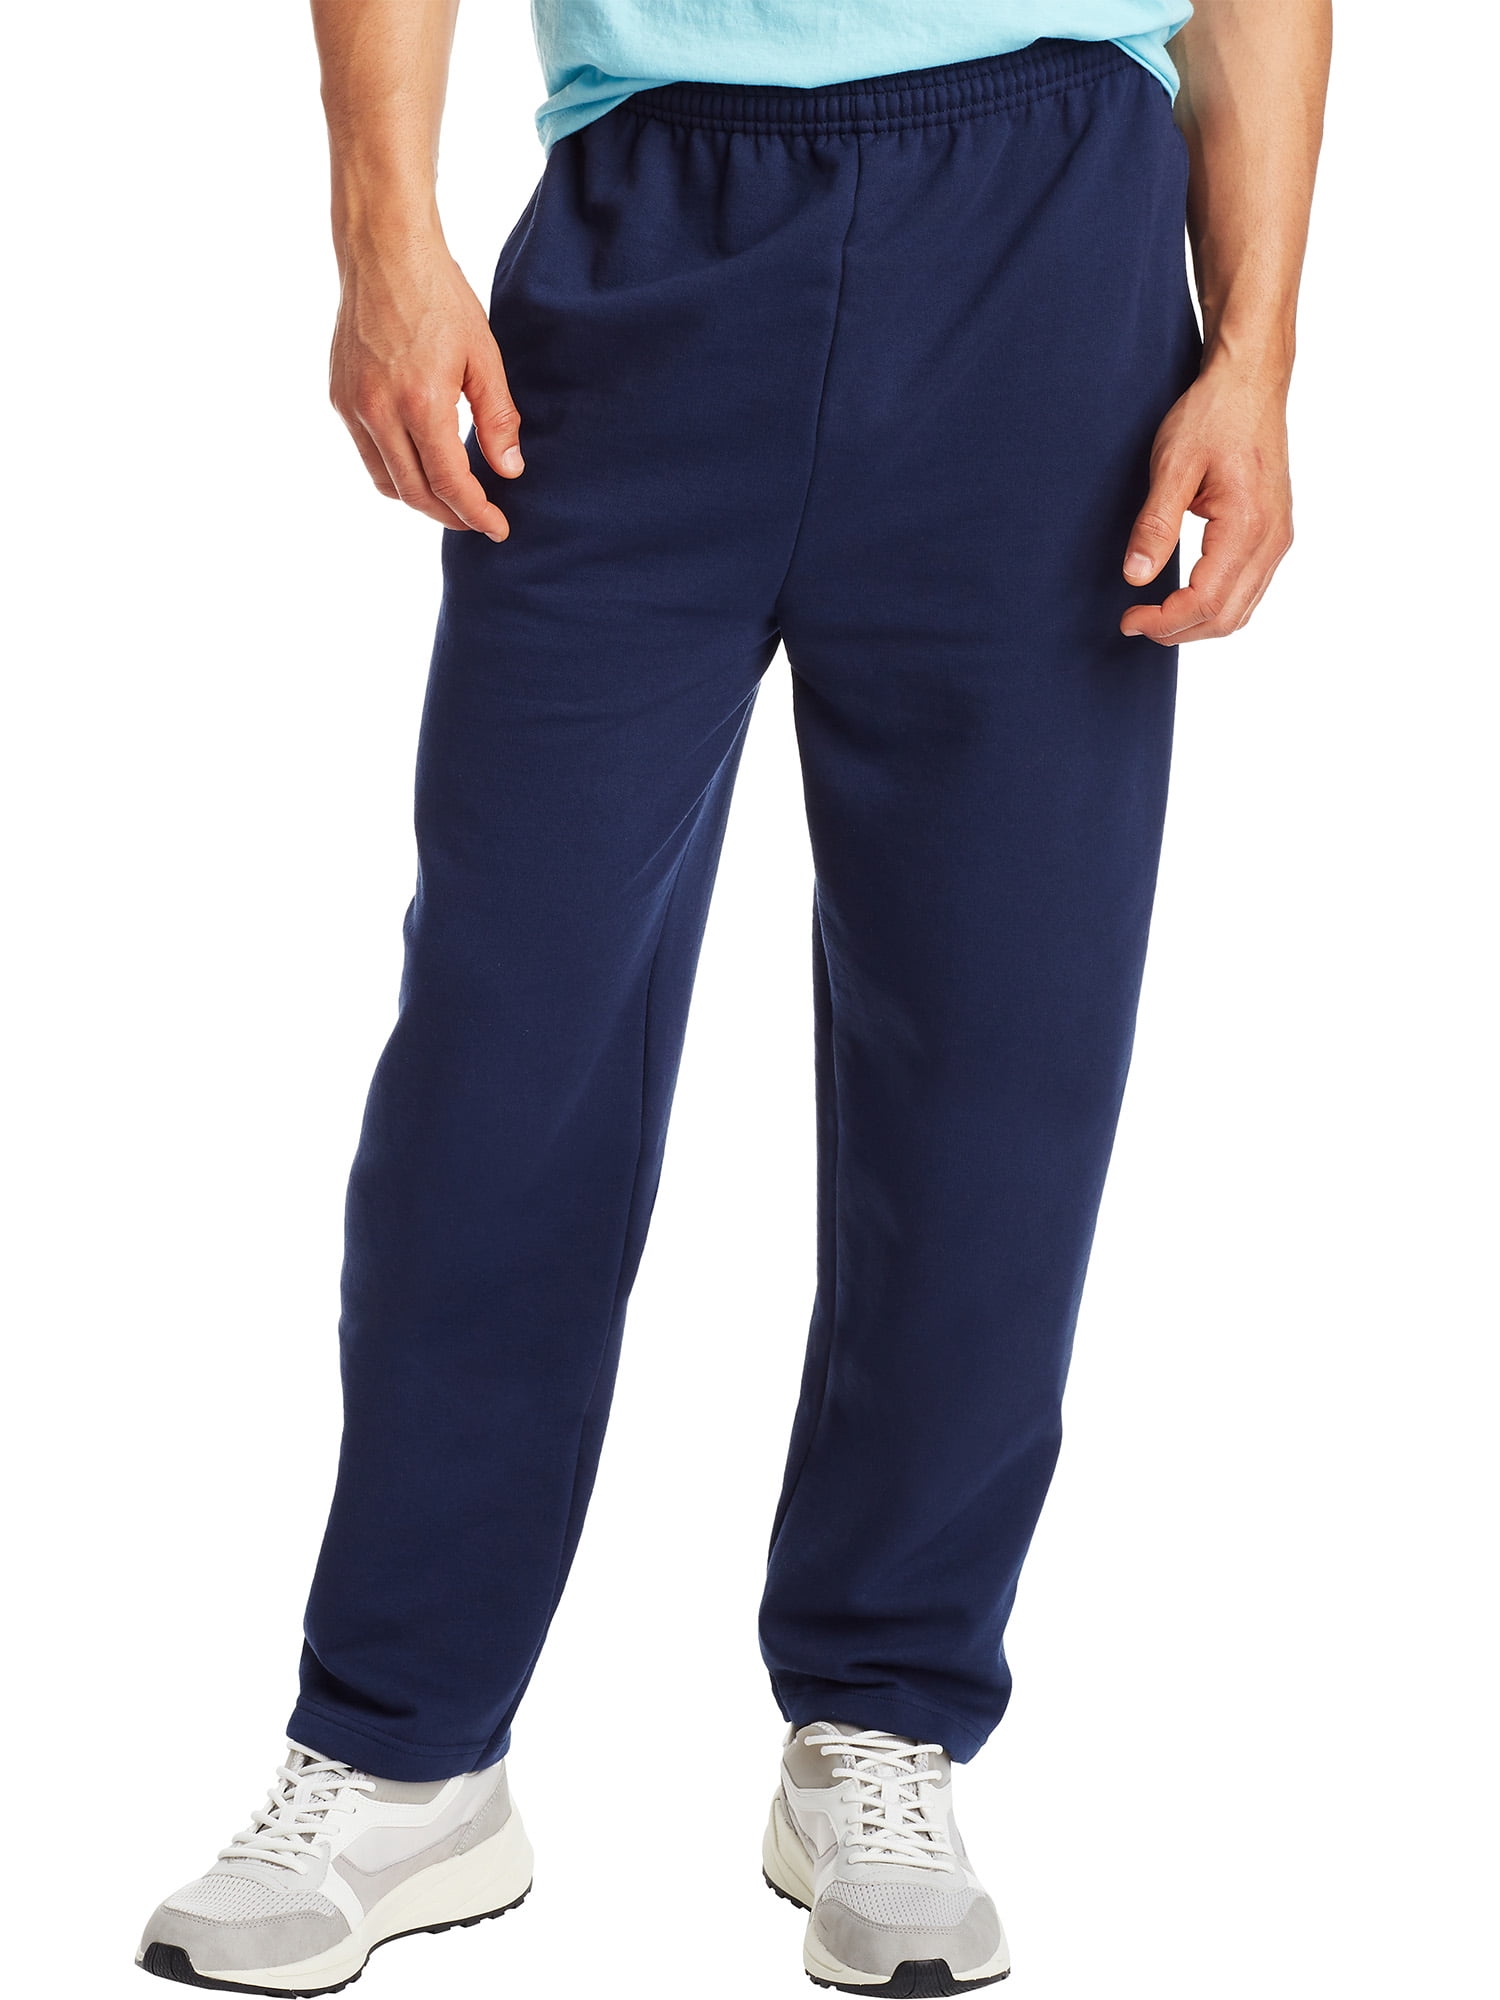 Hanes Men's and Big Men's EcoSmart Fleece Sweatpants with Pockets ...